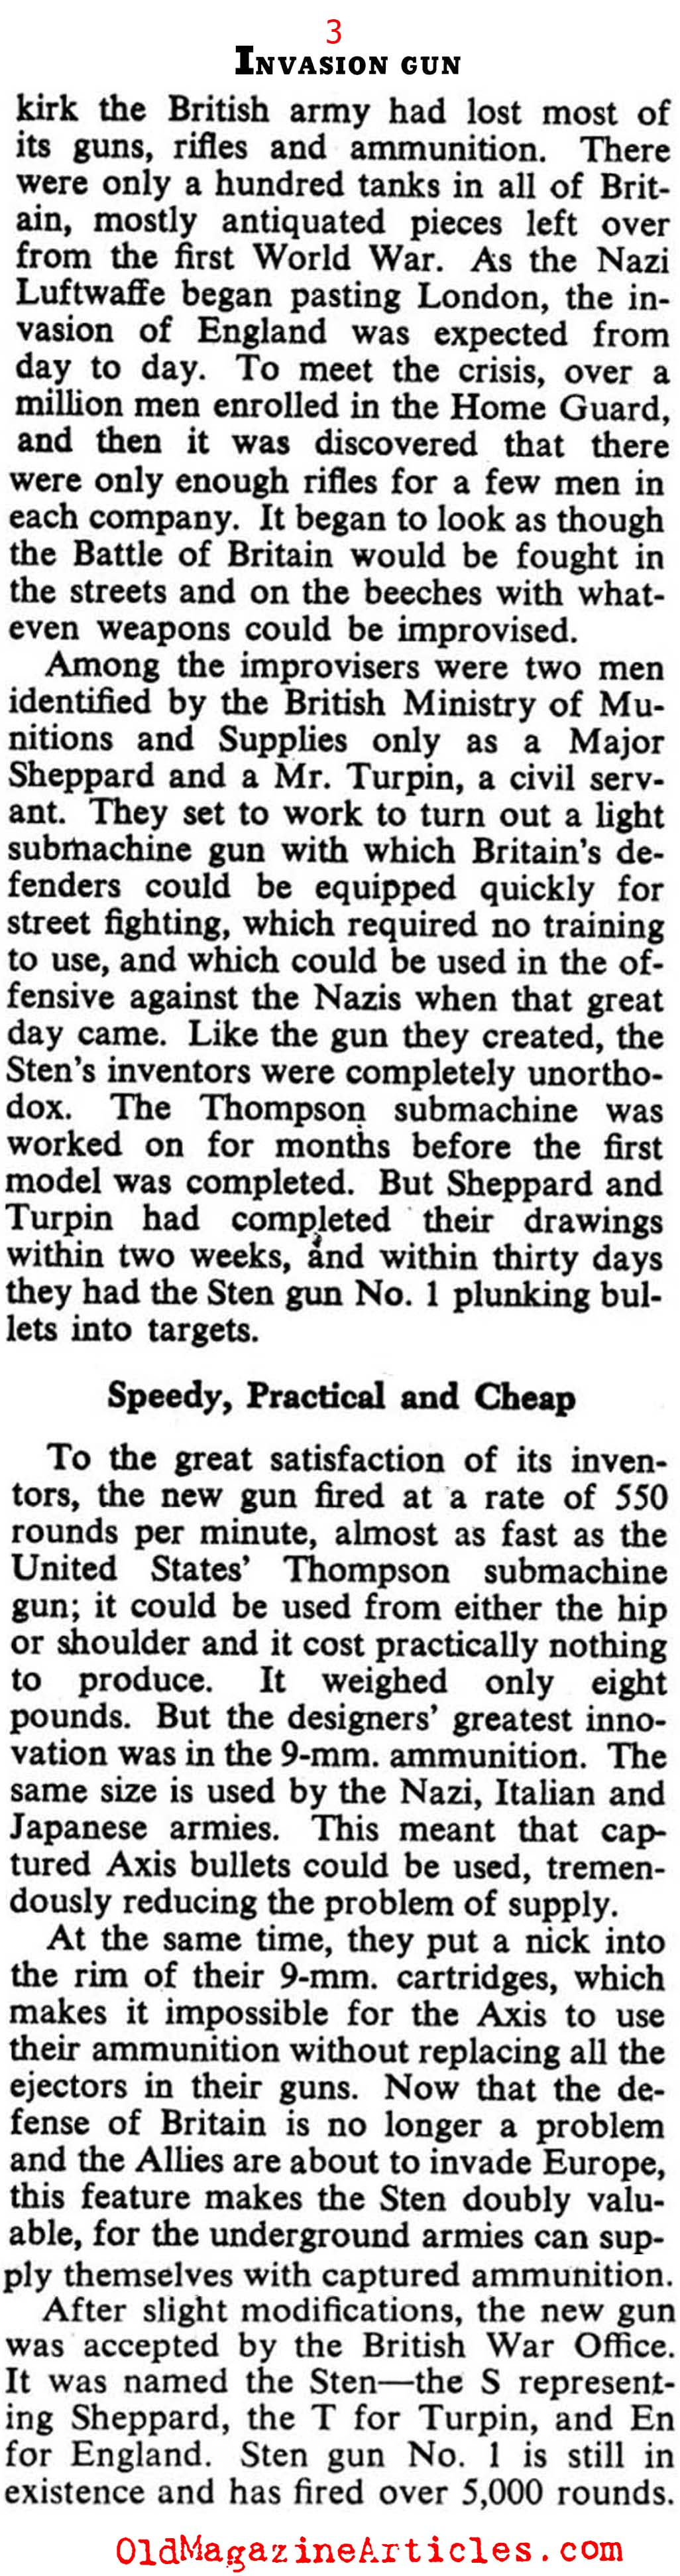 The Sten Gun (Collier's Magazine, 1943)